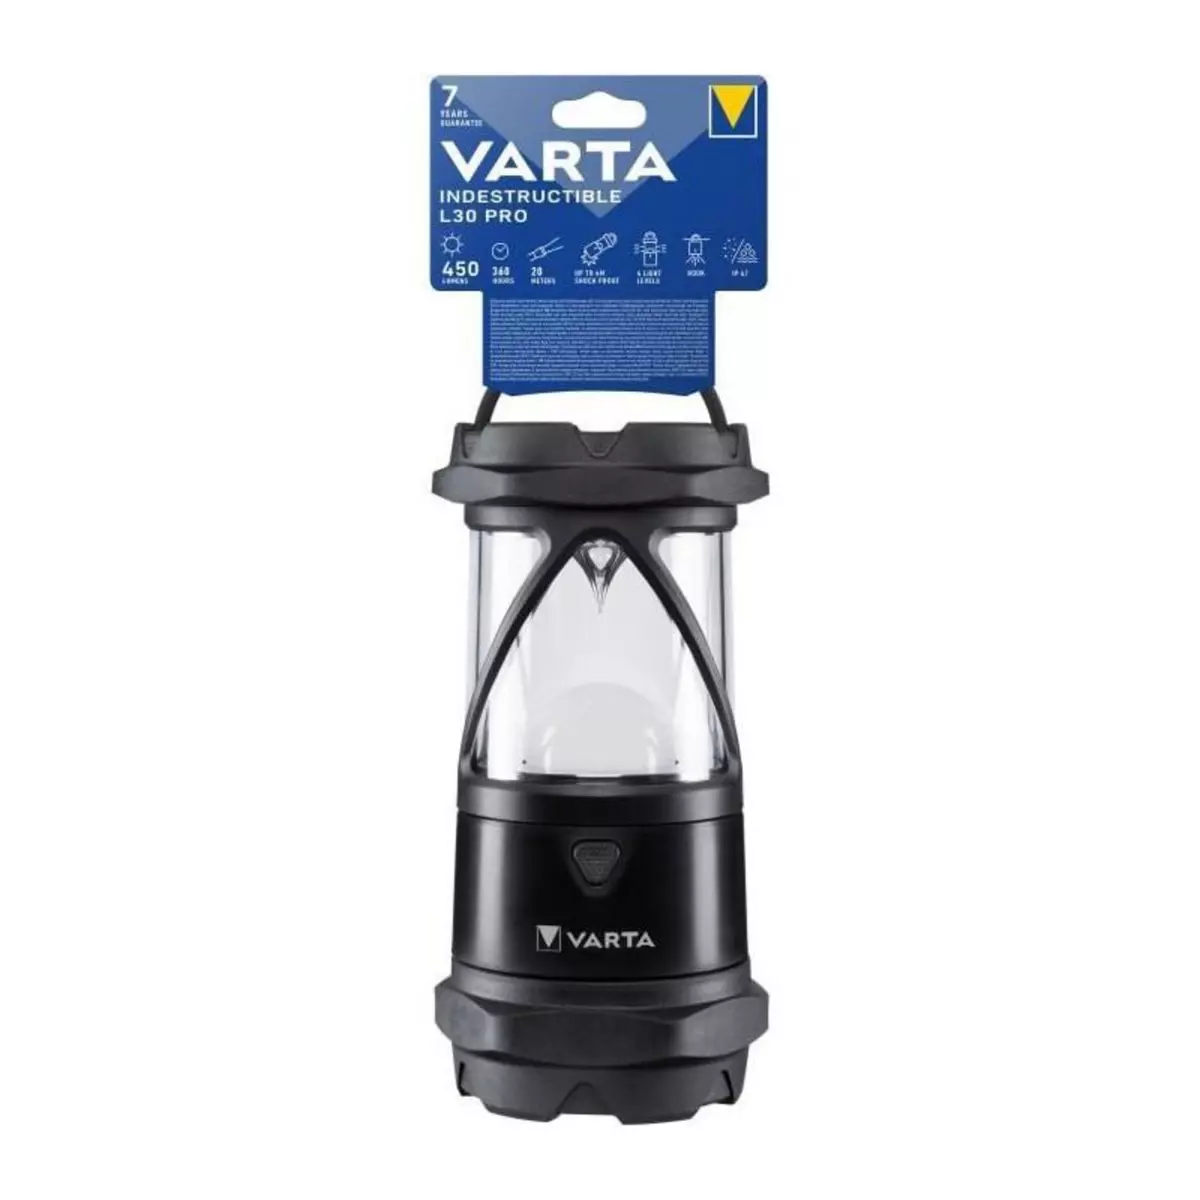 Varta Lanterne-VARTA-Indestructible L30 Pro-450lm-Garantie 7ans-Resistante au chocs (4m)-IP67-Activités extremes-Camping